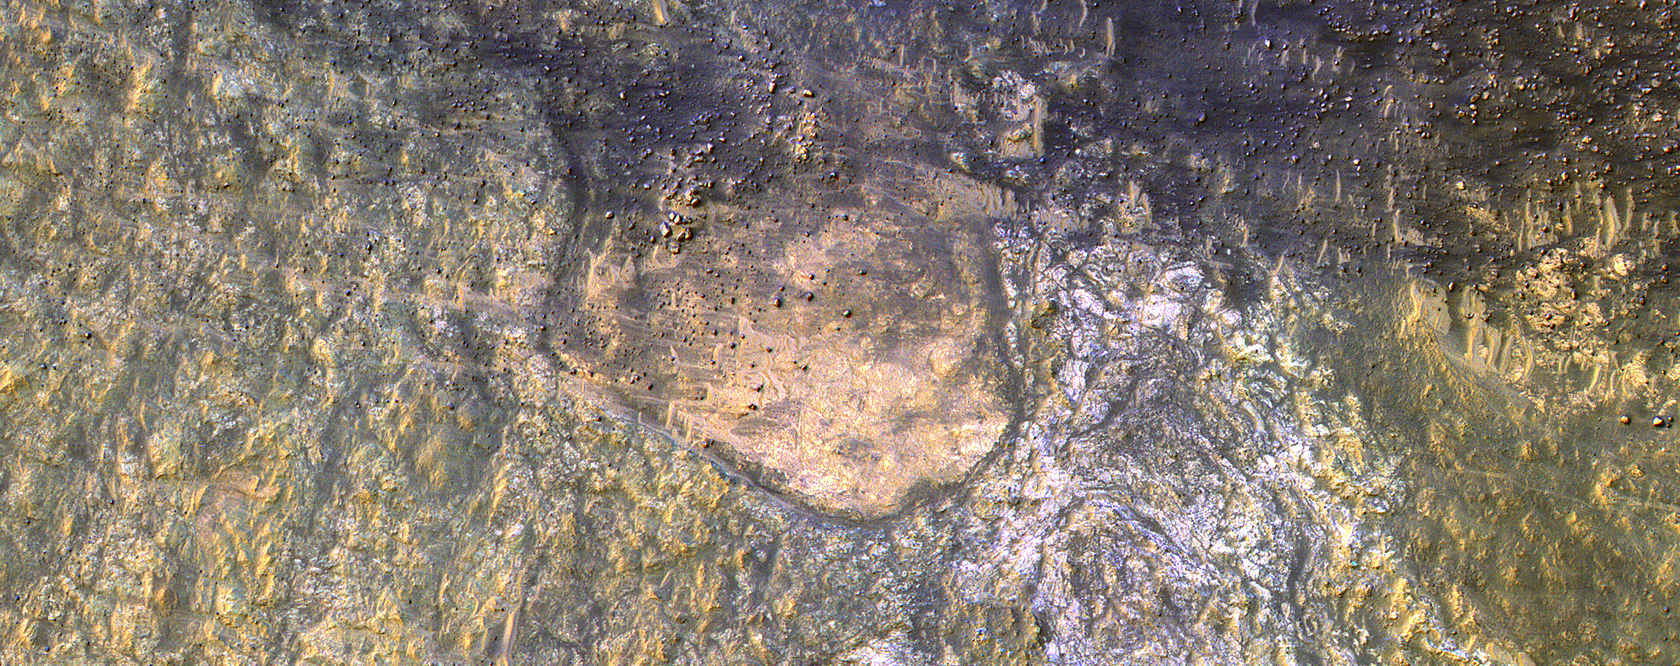 El lecho rocoso del fondo del Crter Kaiser